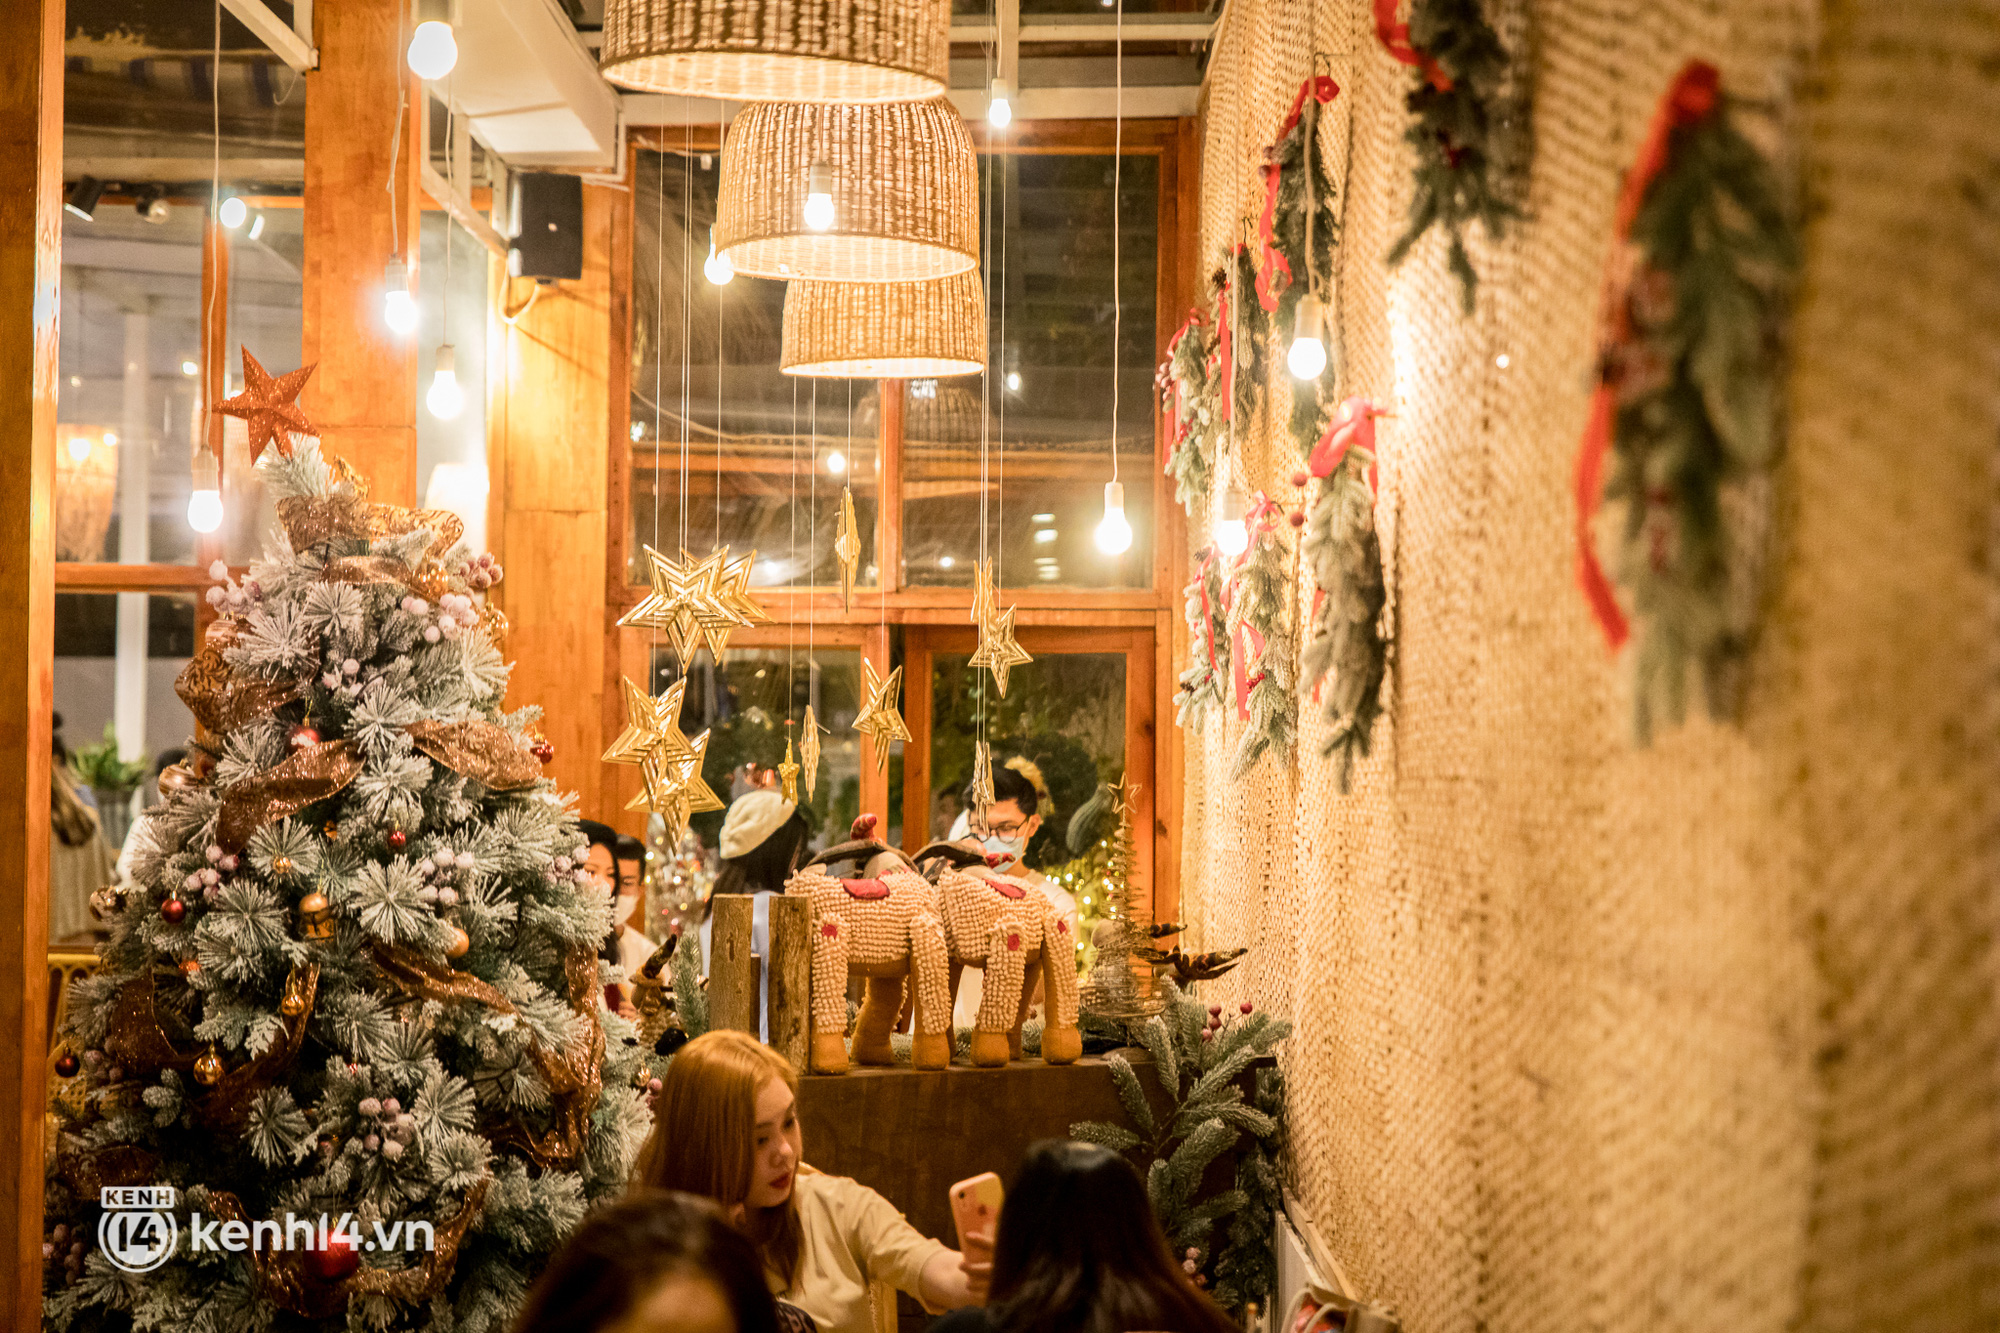 Quán cà phê Sài Gòn chật kín khách đu đưa mùa Giáng sinh, có nơi phải đứng xếp hàng dài để chờ chụp ảnh với tuyết? - Ảnh 3.